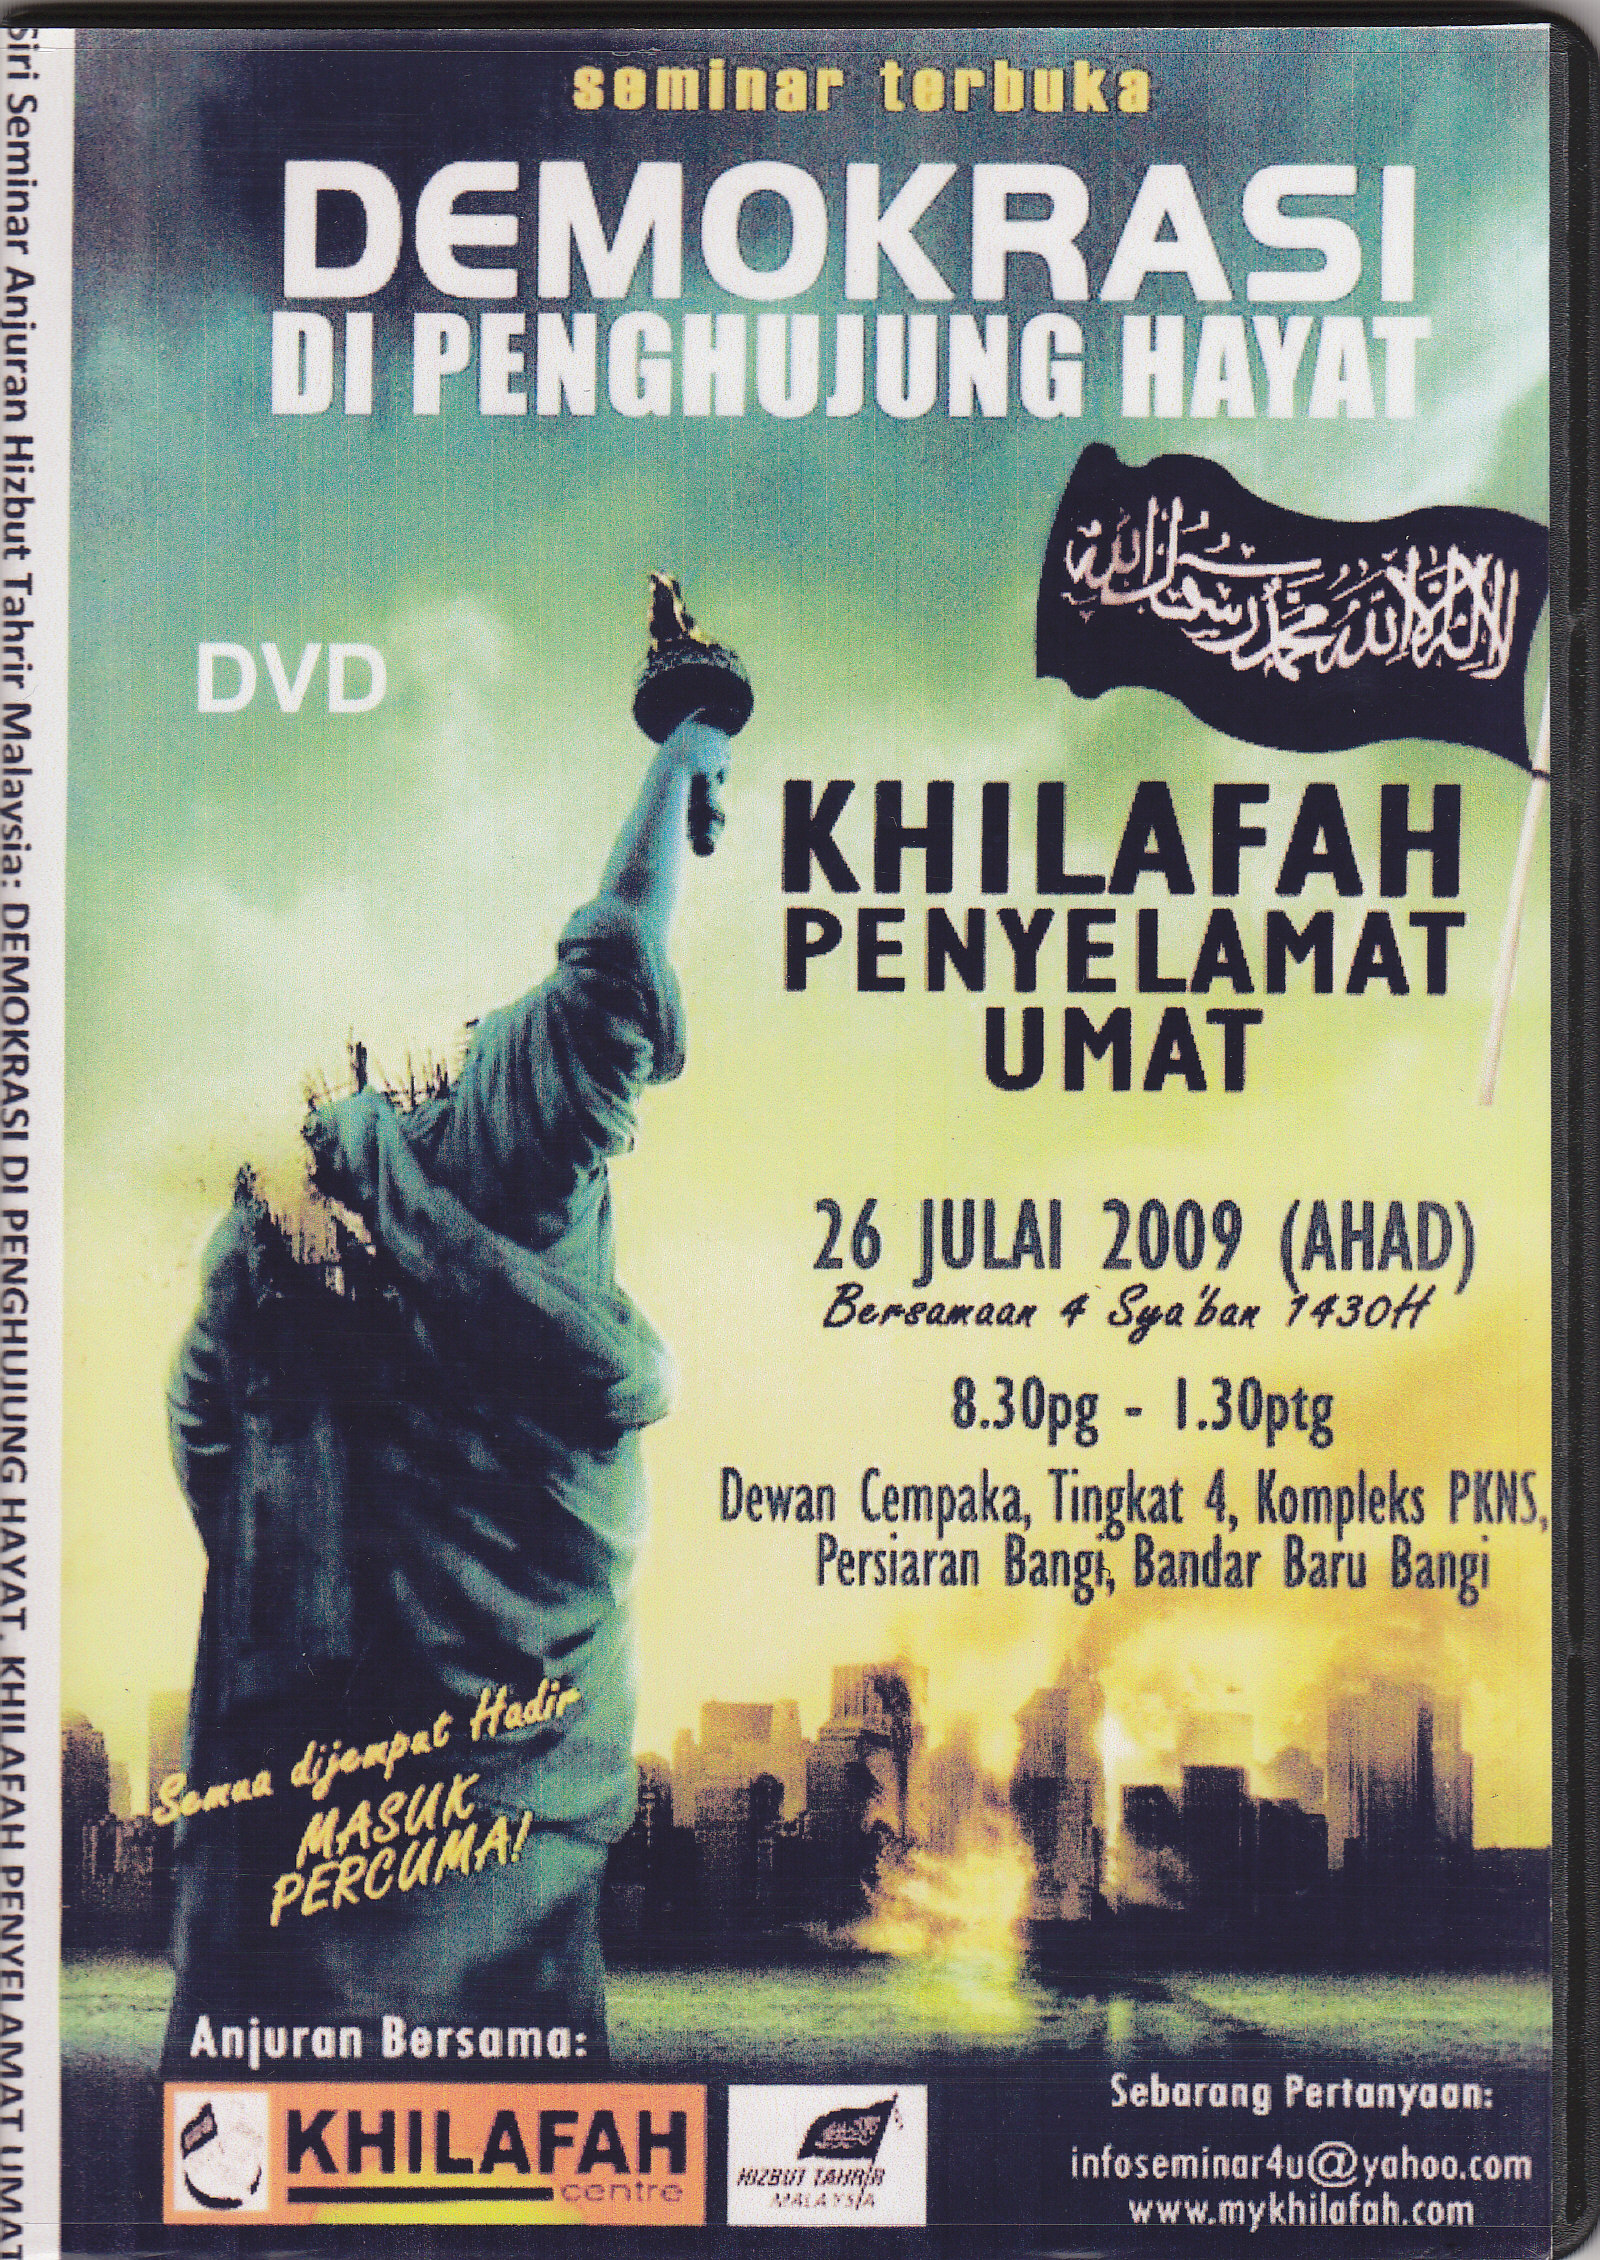 DVD seminar terbuka DEMOKRASI DI PENGHUJUNG HAYAT – RM10 